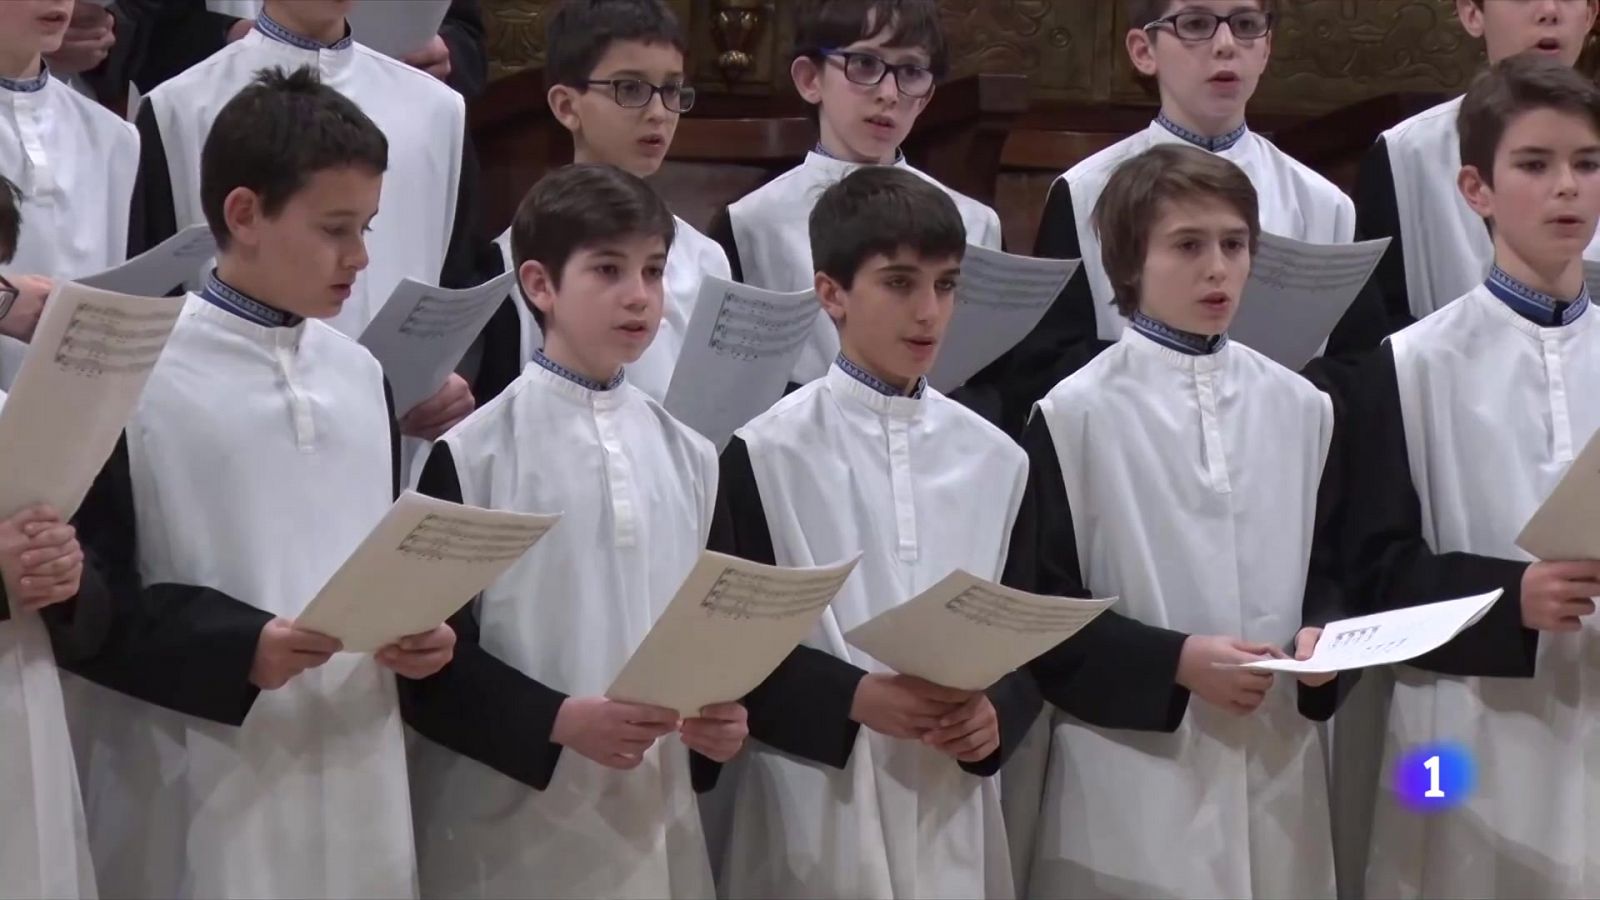  La abadía de Montserrat formará el primer coro mixto en 700 años de historia